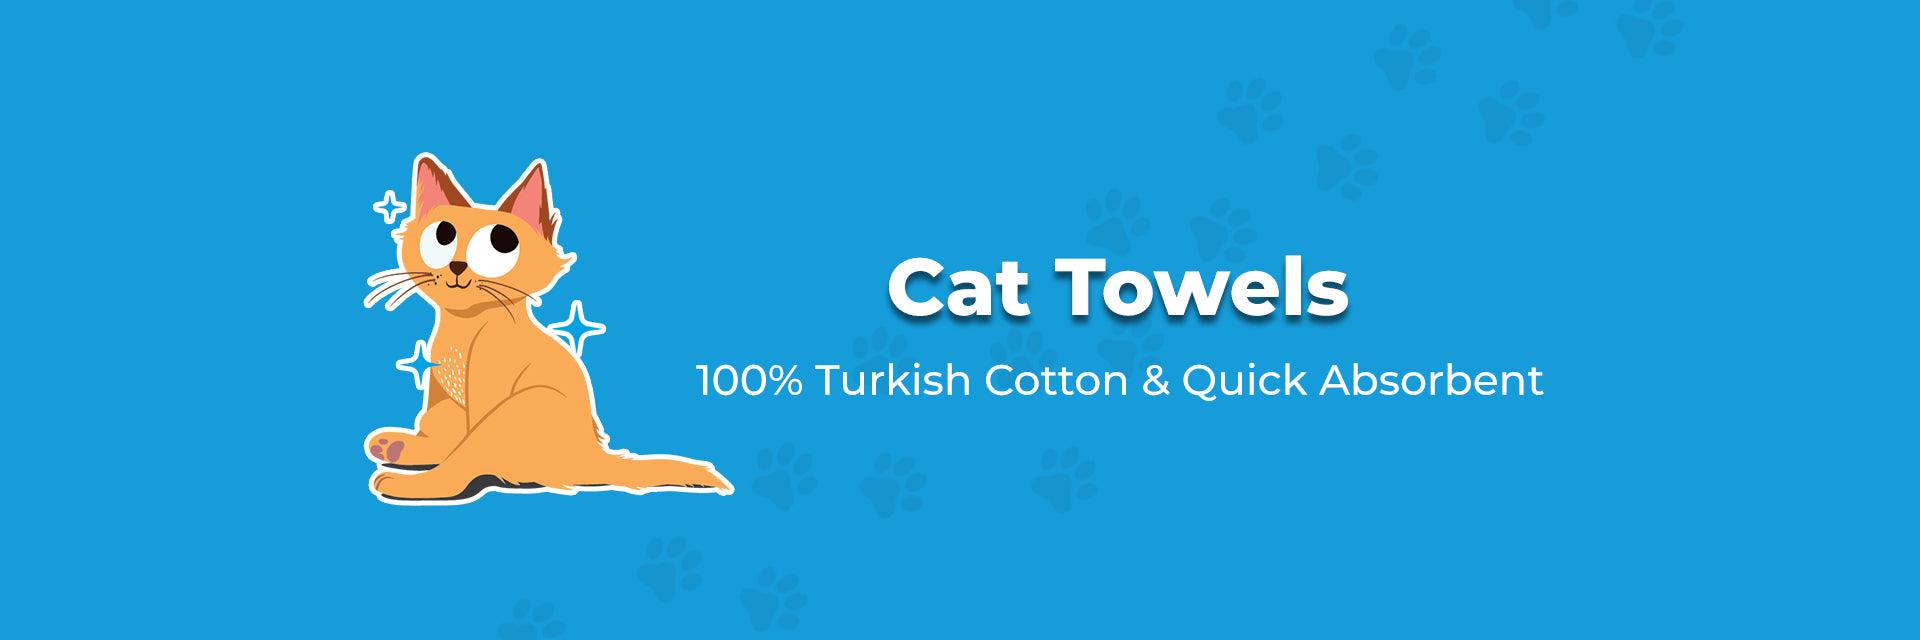 Cat Towels - Captain Zack